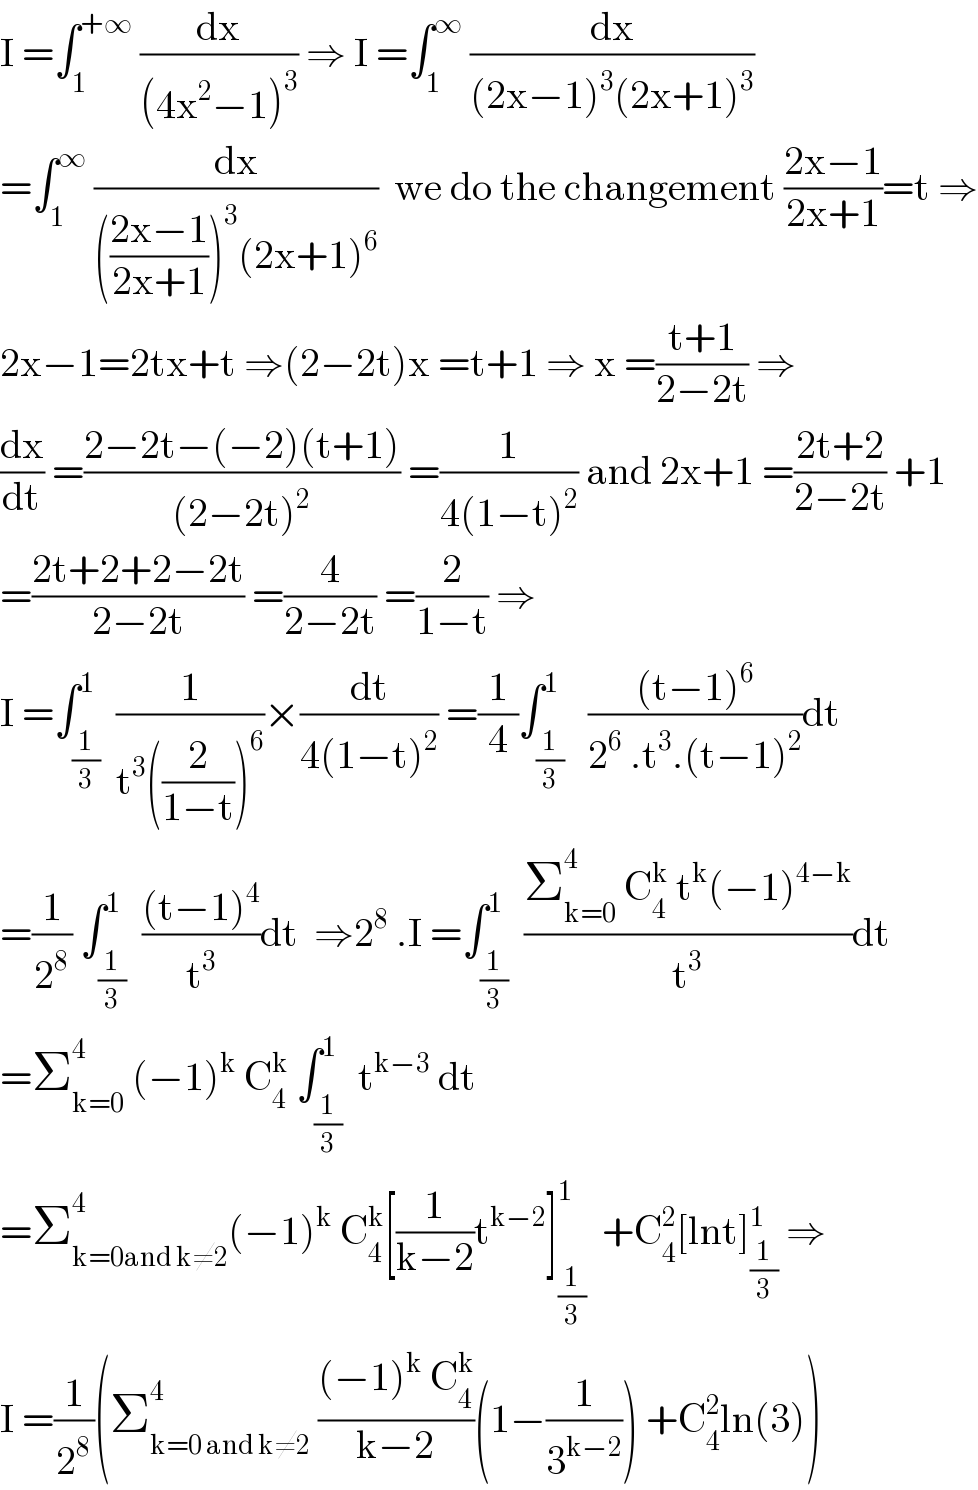 I =∫_1 ^(+∞)  (dx/((4x^2 −1)^3 )) ⇒ I =∫_1 ^∞  (dx/((2x−1)^3 (2x+1)^3 ))  =∫_1 ^∞  (dx/((((2x−1)/(2x+1)))^3 (2x+1)^6 ))  we do the changement ((2x−1)/(2x+1))=t ⇒  2x−1=2tx+t ⇒(2−2t)x =t+1 ⇒ x =((t+1)/(2−2t)) ⇒  (dx/dt) =((2−2t−(−2)(t+1))/((2−2t)^2 )) =(1/(4(1−t)^2 )) and 2x+1 =((2t+2)/(2−2t)) +1  =((2t+2+2−2t)/(2−2t)) =(4/(2−2t)) =(2/(1−t)) ⇒  I =∫_(1/3) ^1  (1/(t^3 ((2/(1−t)))^6 ))×(dt/(4(1−t)^2 )) =(1/4)∫_(1/3) ^1   (((t−1)^6 )/(2^6  .t^3 .(t−1)^2 ))dt  =(1/2^8 ) ∫_(1/3) ^1  (((t−1)^4 )/t^3 )dt  ⇒2^8  .I =∫_(1/3) ^1  ((Σ_(k=0) ^4  C_4 ^k  t^k (−1)^(4−k) )/t^3 )dt  =Σ_(k=0) ^4  (−1)^k  C_4 ^k  ∫_(1/3) ^1  t^(k−3)  dt  =Σ_(k=0and k≠2) ^4 (−1)^k  C_4 ^k [(1/(k−2))t^(k−2) ]_(1/3) ^1   +C_4 ^2 [lnt]_(1/3) ^1  ⇒  I =(1/2^8 )(Σ_(k=0 and k≠2) ^4  (((−1)^k  C_4 ^k )/(k−2))(1−(1/3^(k−2) )) +C_4 ^2 ln(3))  